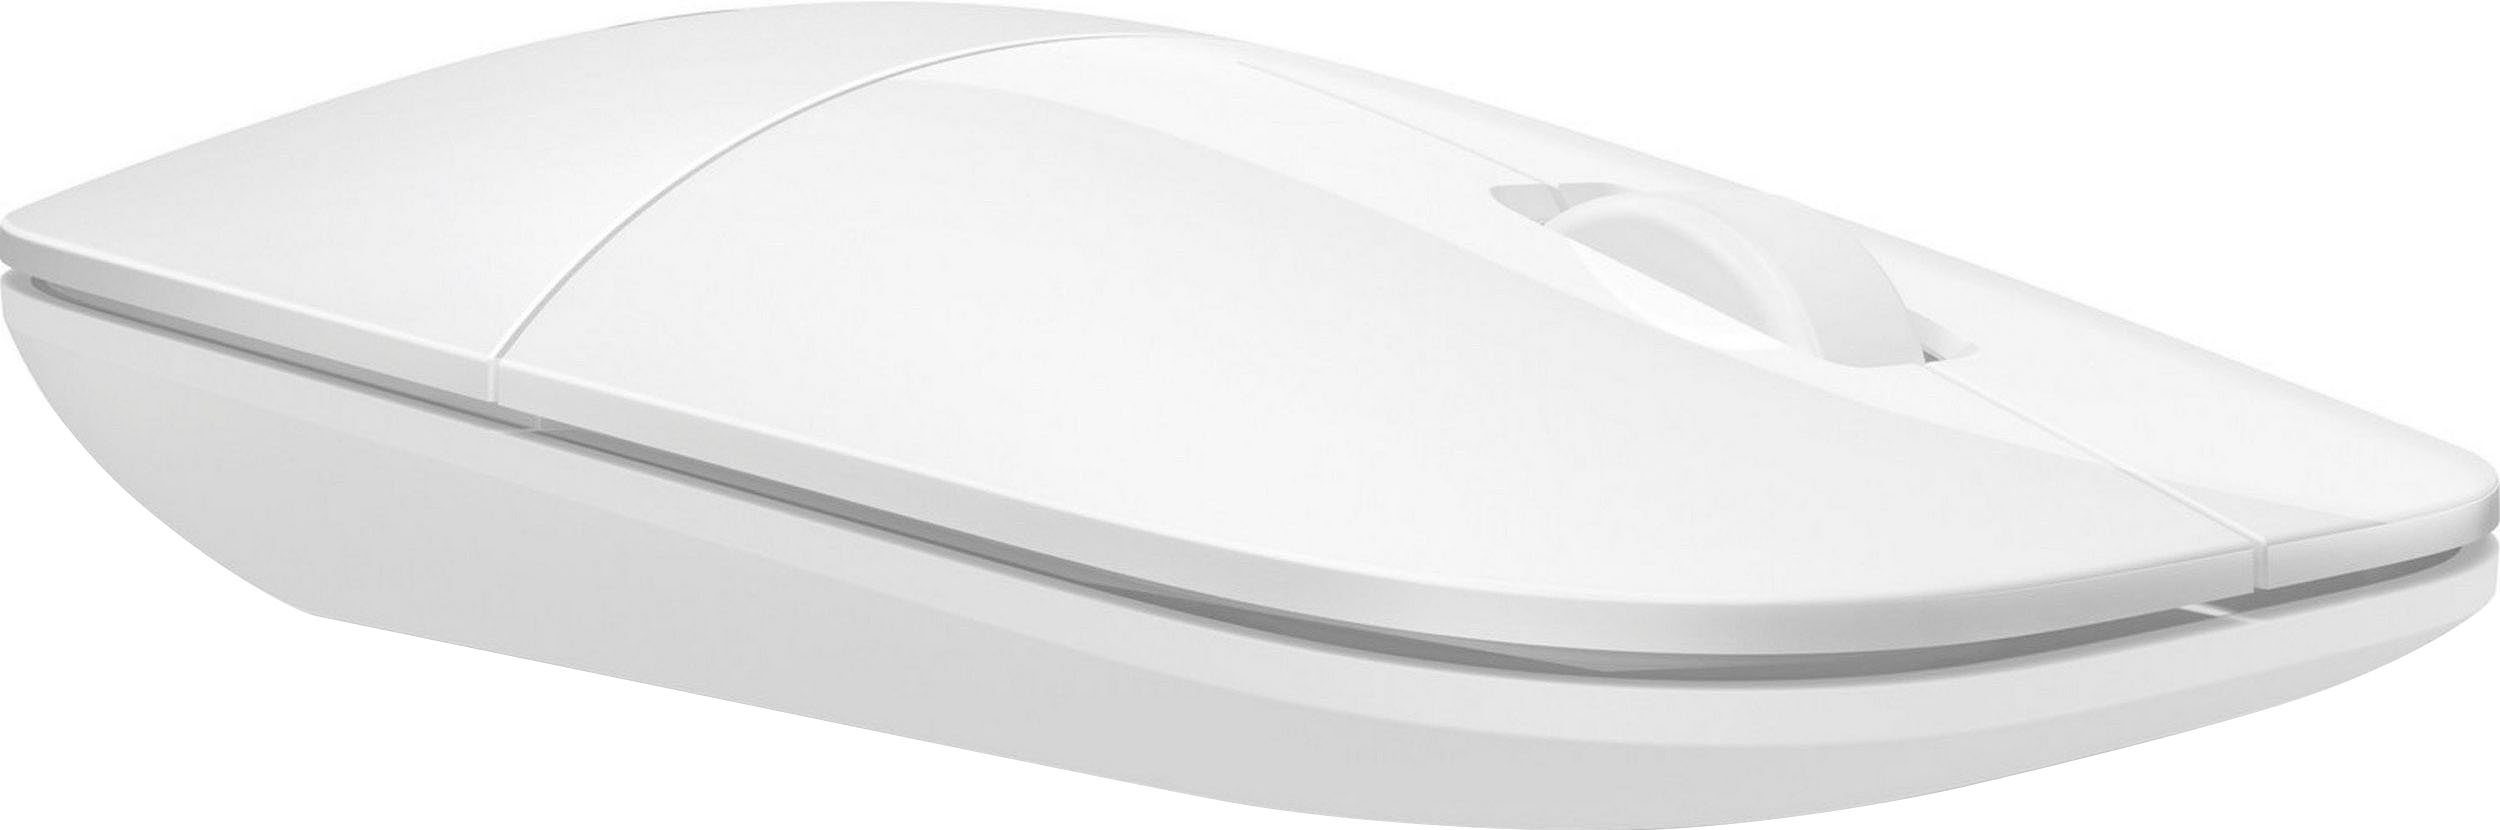 HP Z3700 Maus weiß